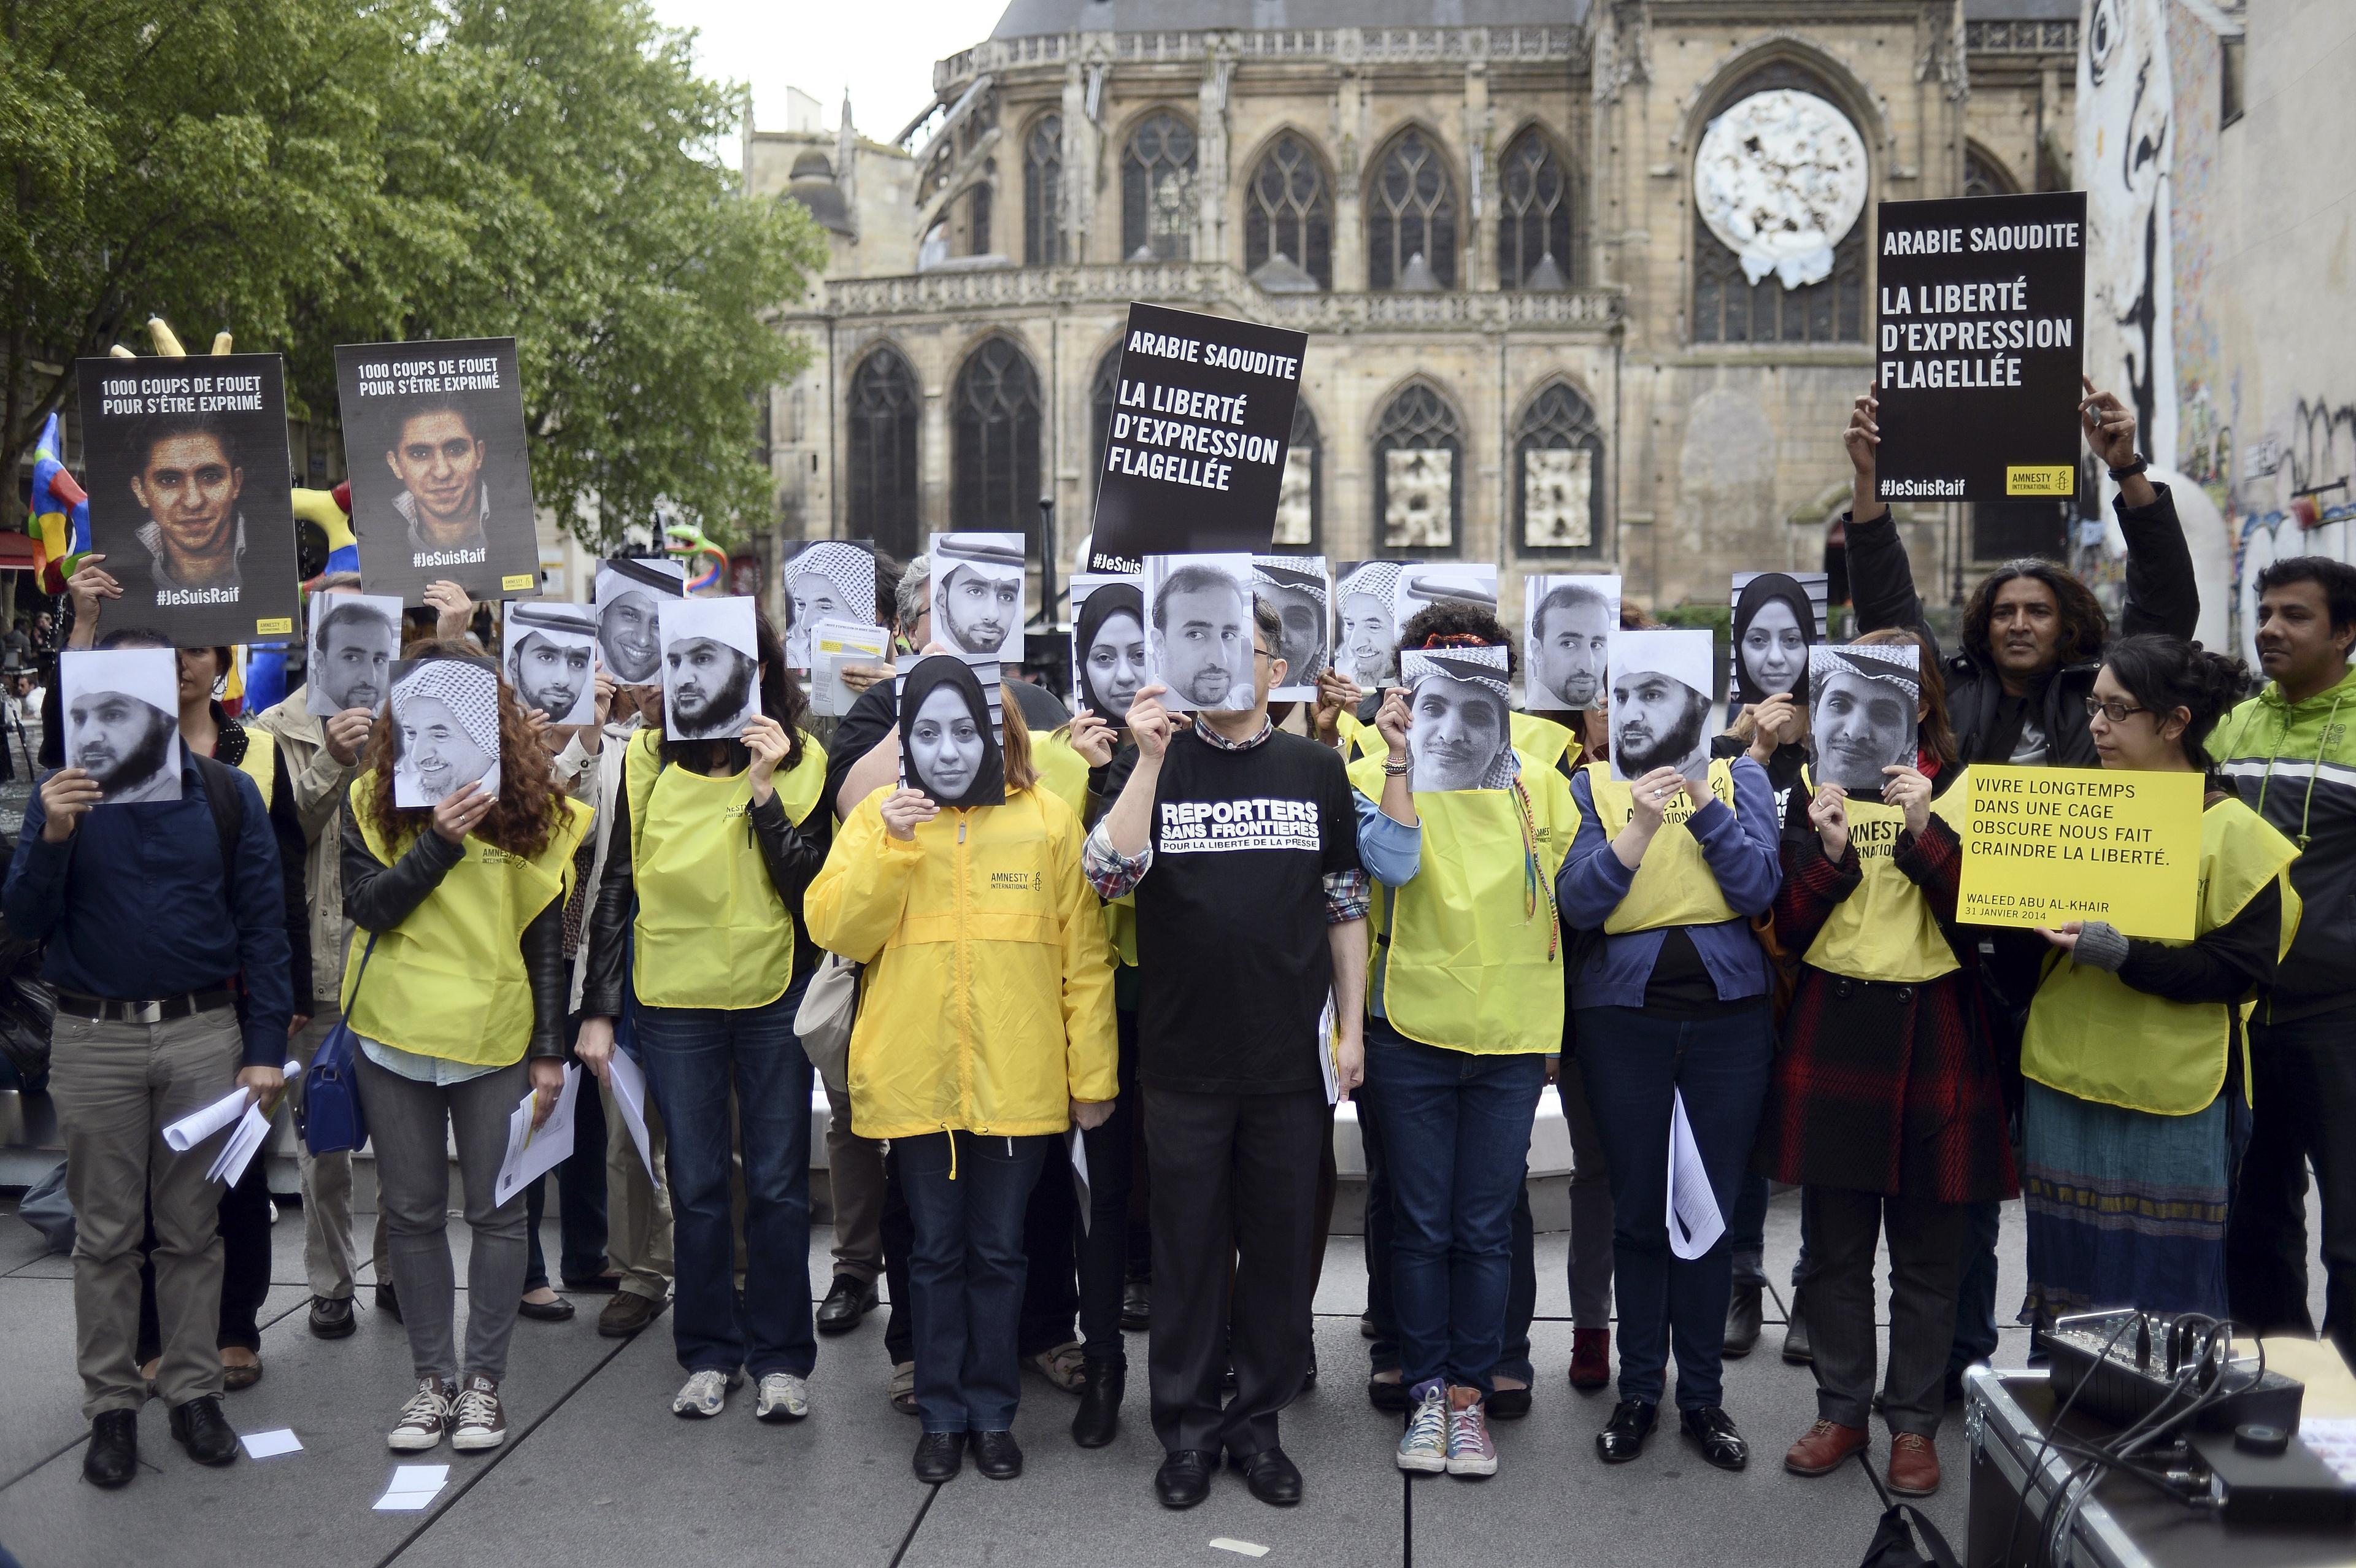 I juni fastställde Högsta domstolen i Saudiarabien domen på tio års fängelse och 1000 piskrapp för den saudiske bloggaren Raid Badawi, vilket föranledde protester bland annat från Frankrike. (Foto: Stephane De Sakutin/AFP/Getty Image)